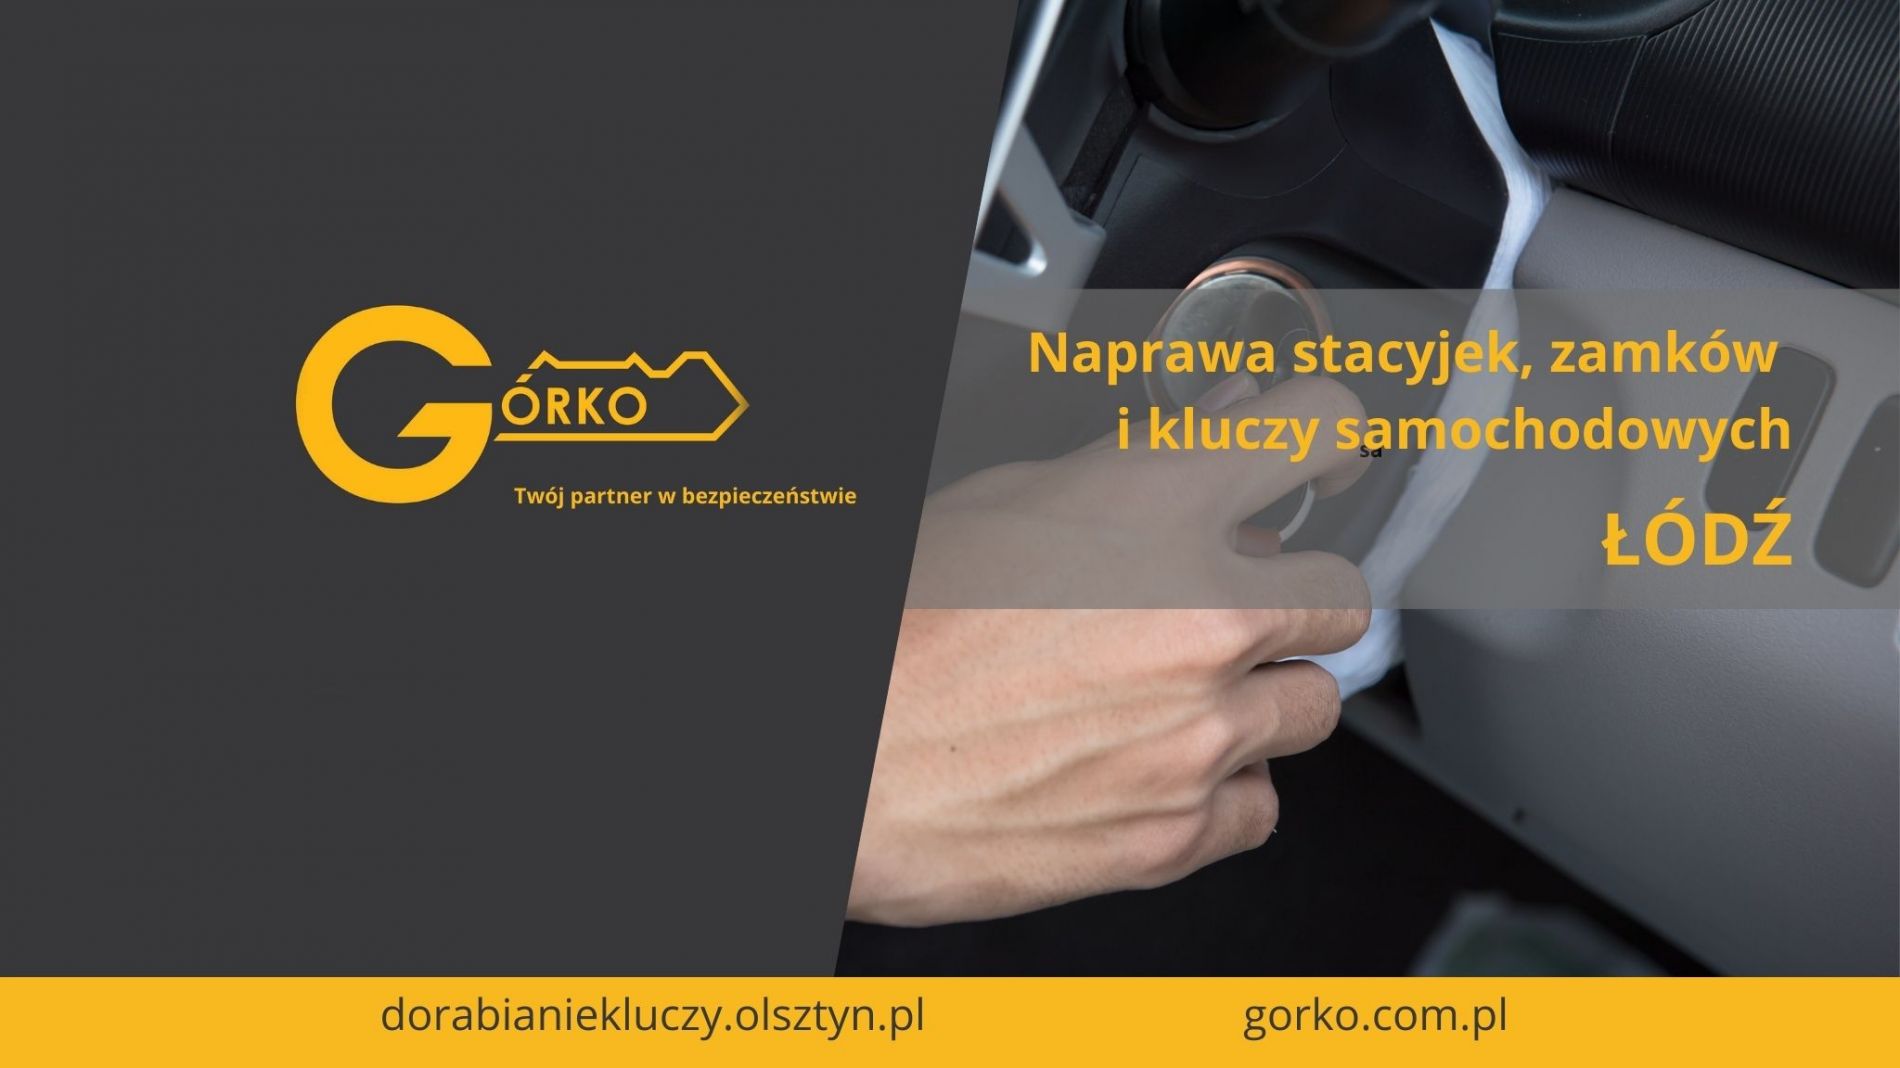 Naprawa stacyjek, zamków i kluczy samochodowych – Łódź (Usługa zdalna)